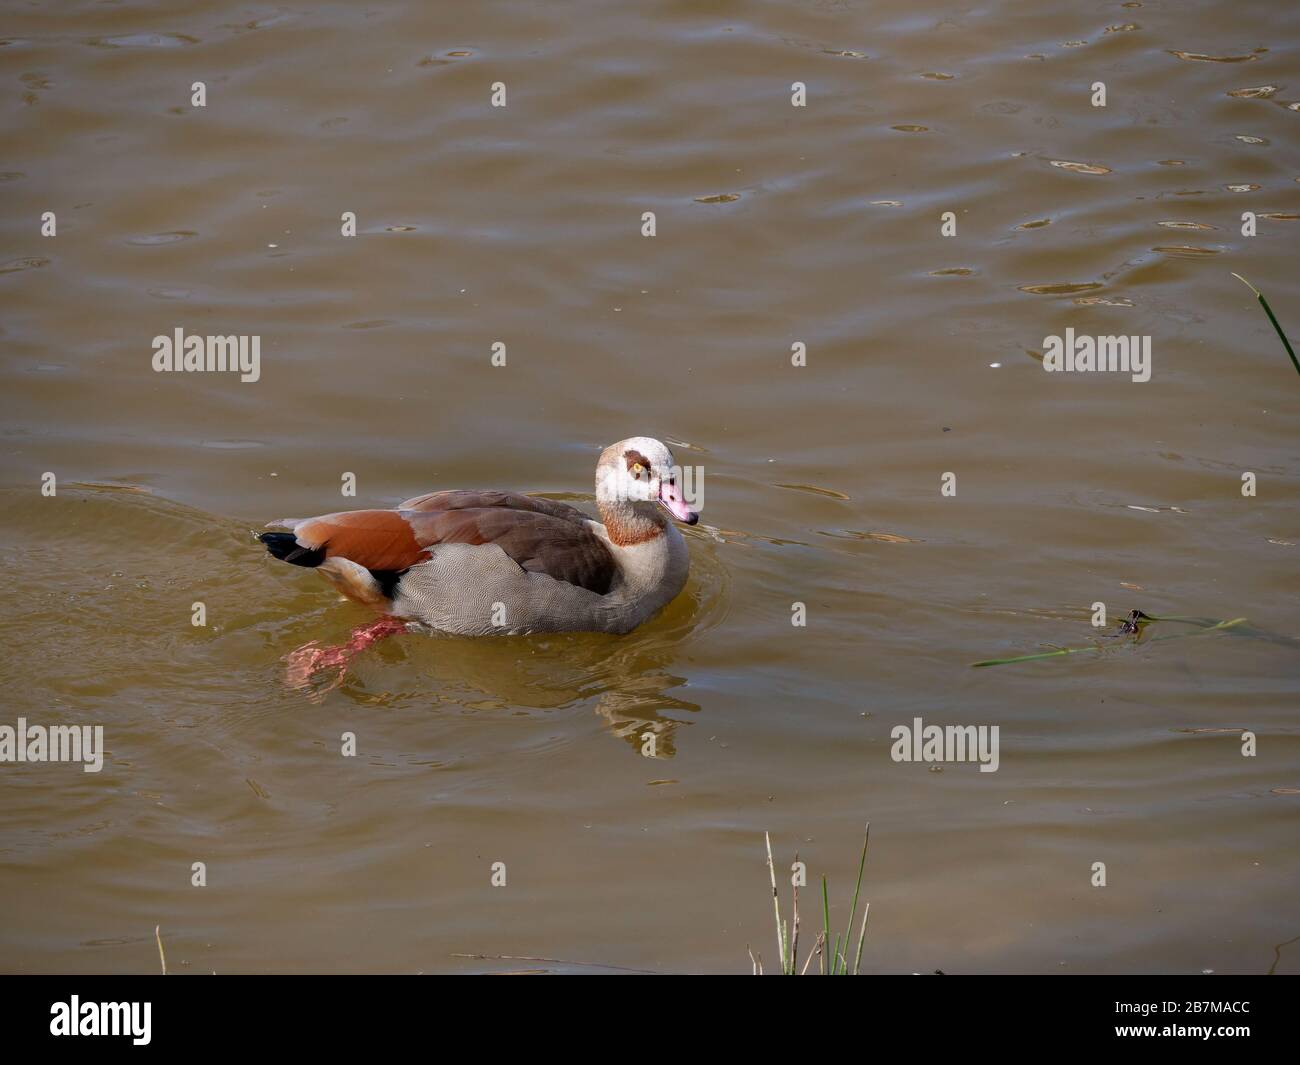 Nile goose invasive species in the Appleres river in Madrid Stock Photo